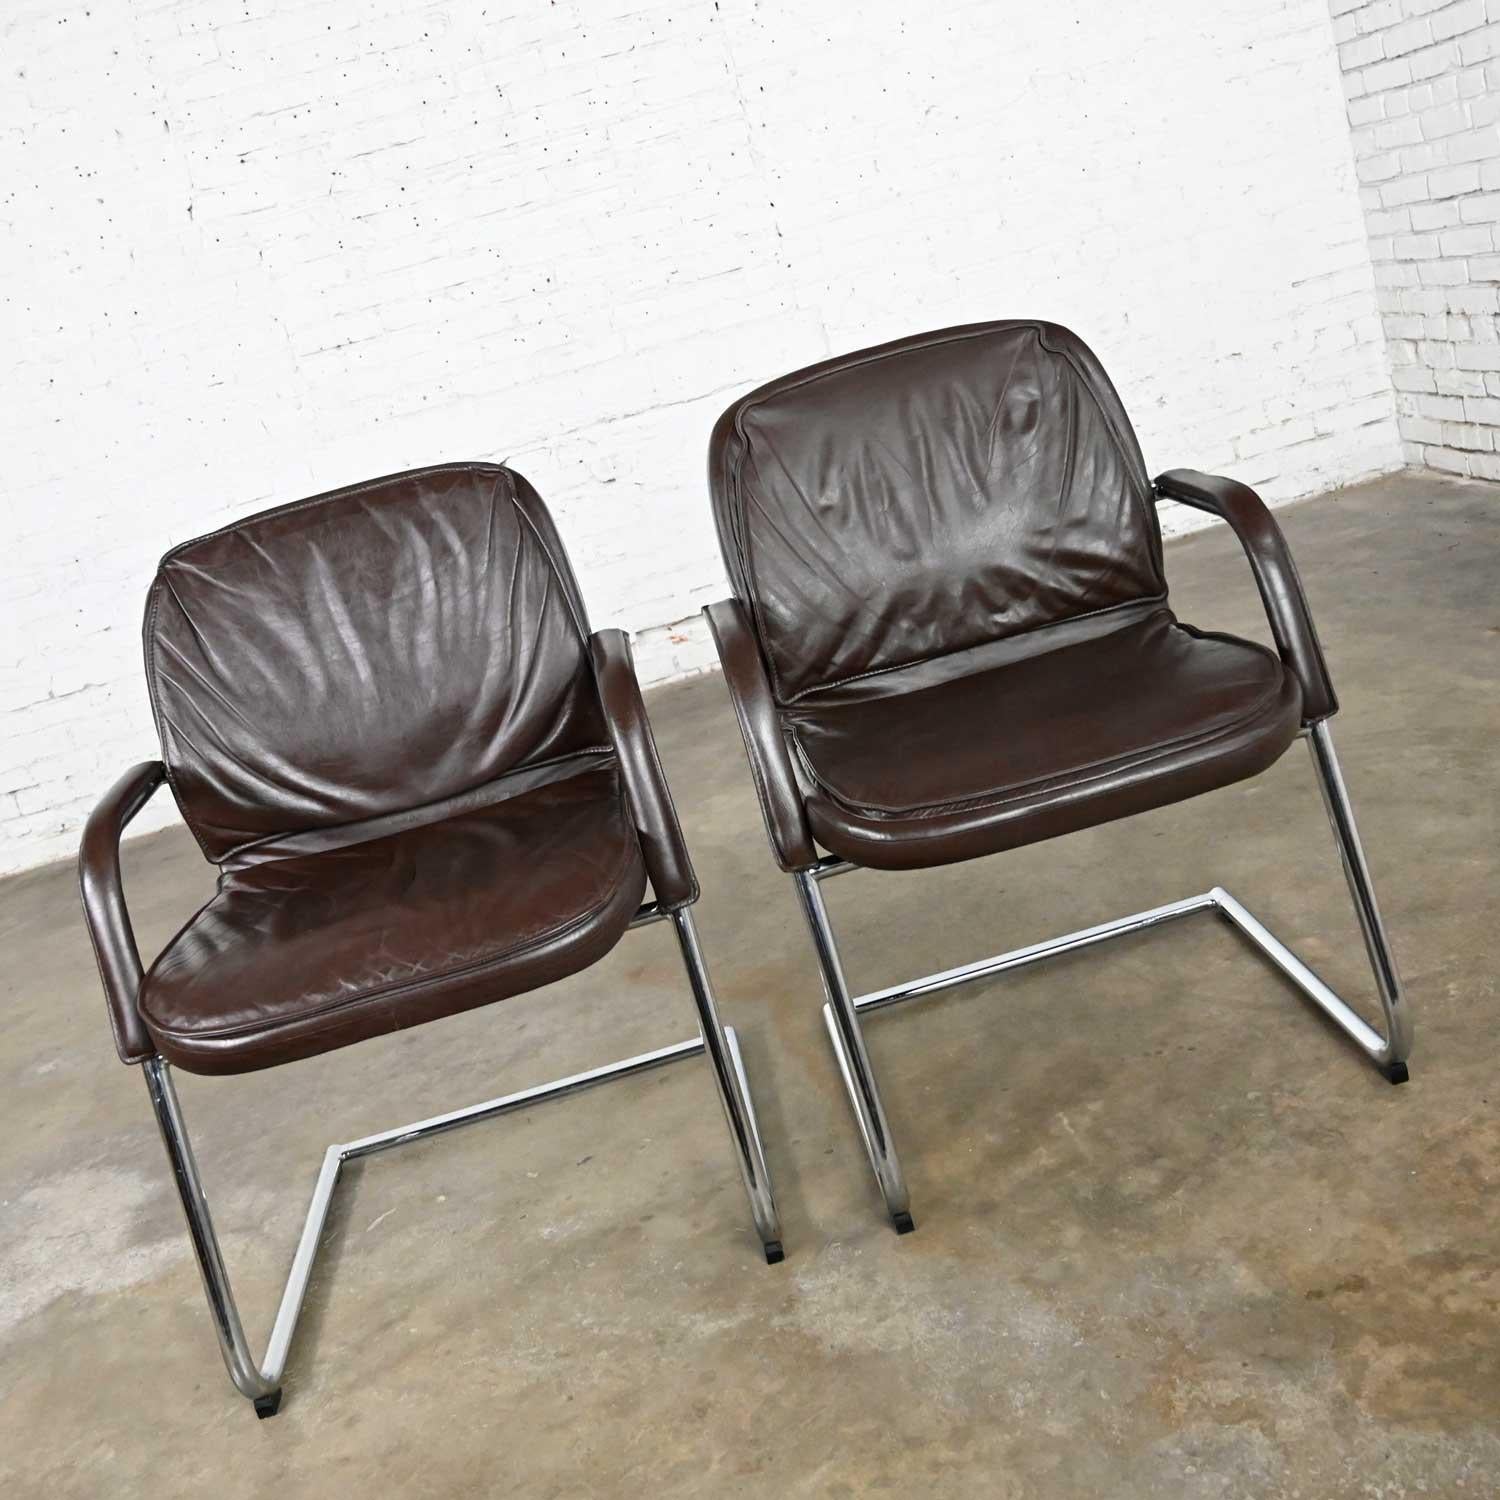 Freischwingendes Paar Stühle aus braunem Leder und Chrom im Vintage-Stil von Vecta Contract (20. Jahrhundert) im Angebot